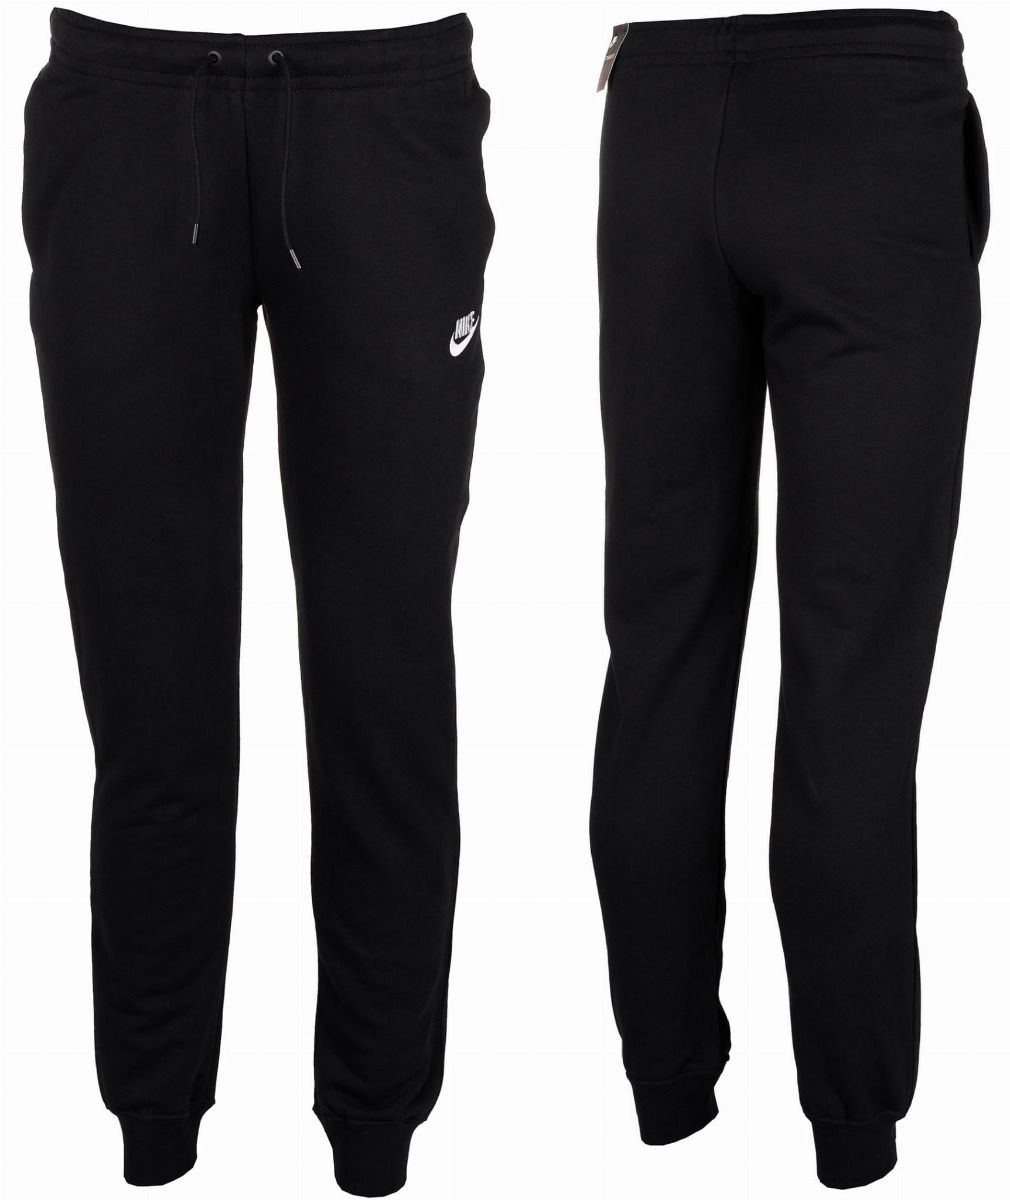 Nike Spodnie Damskie W NSW Essentials Pant Tight BV4099 010